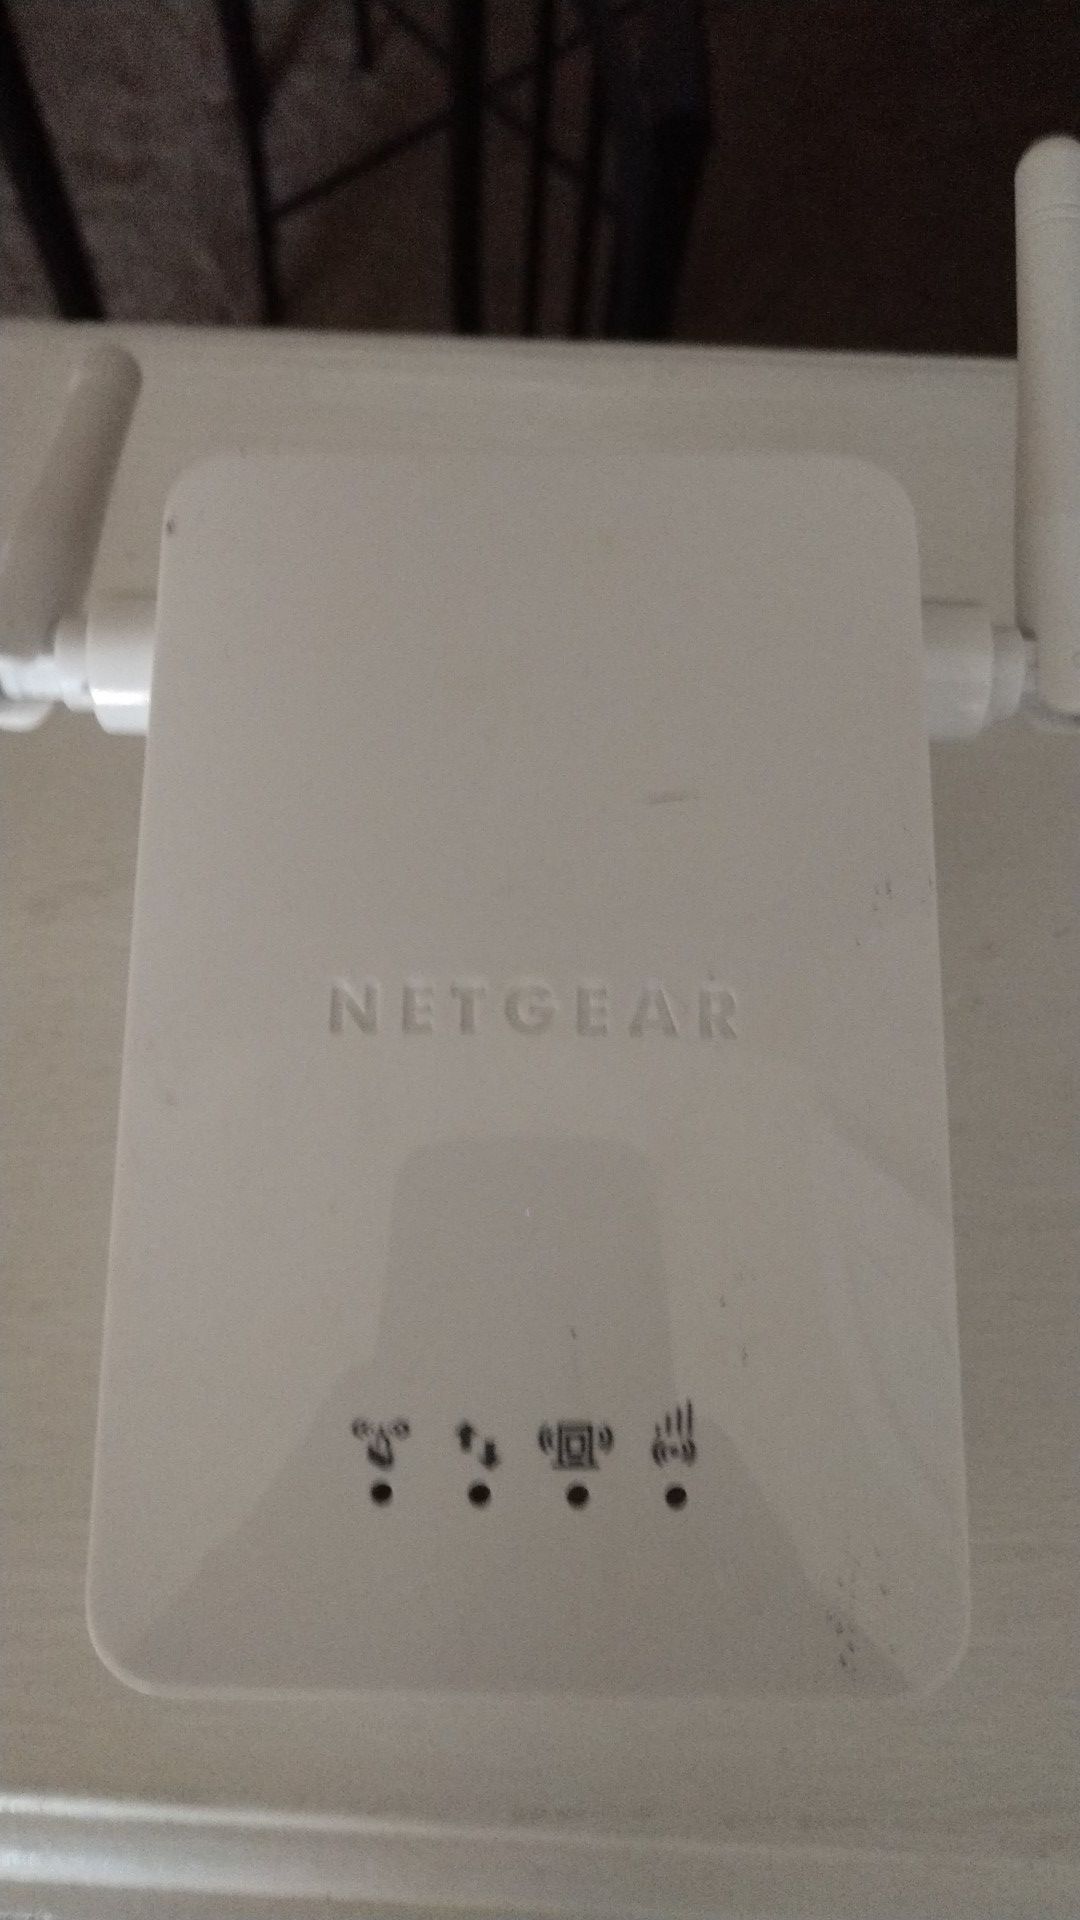 Netgear internet extender